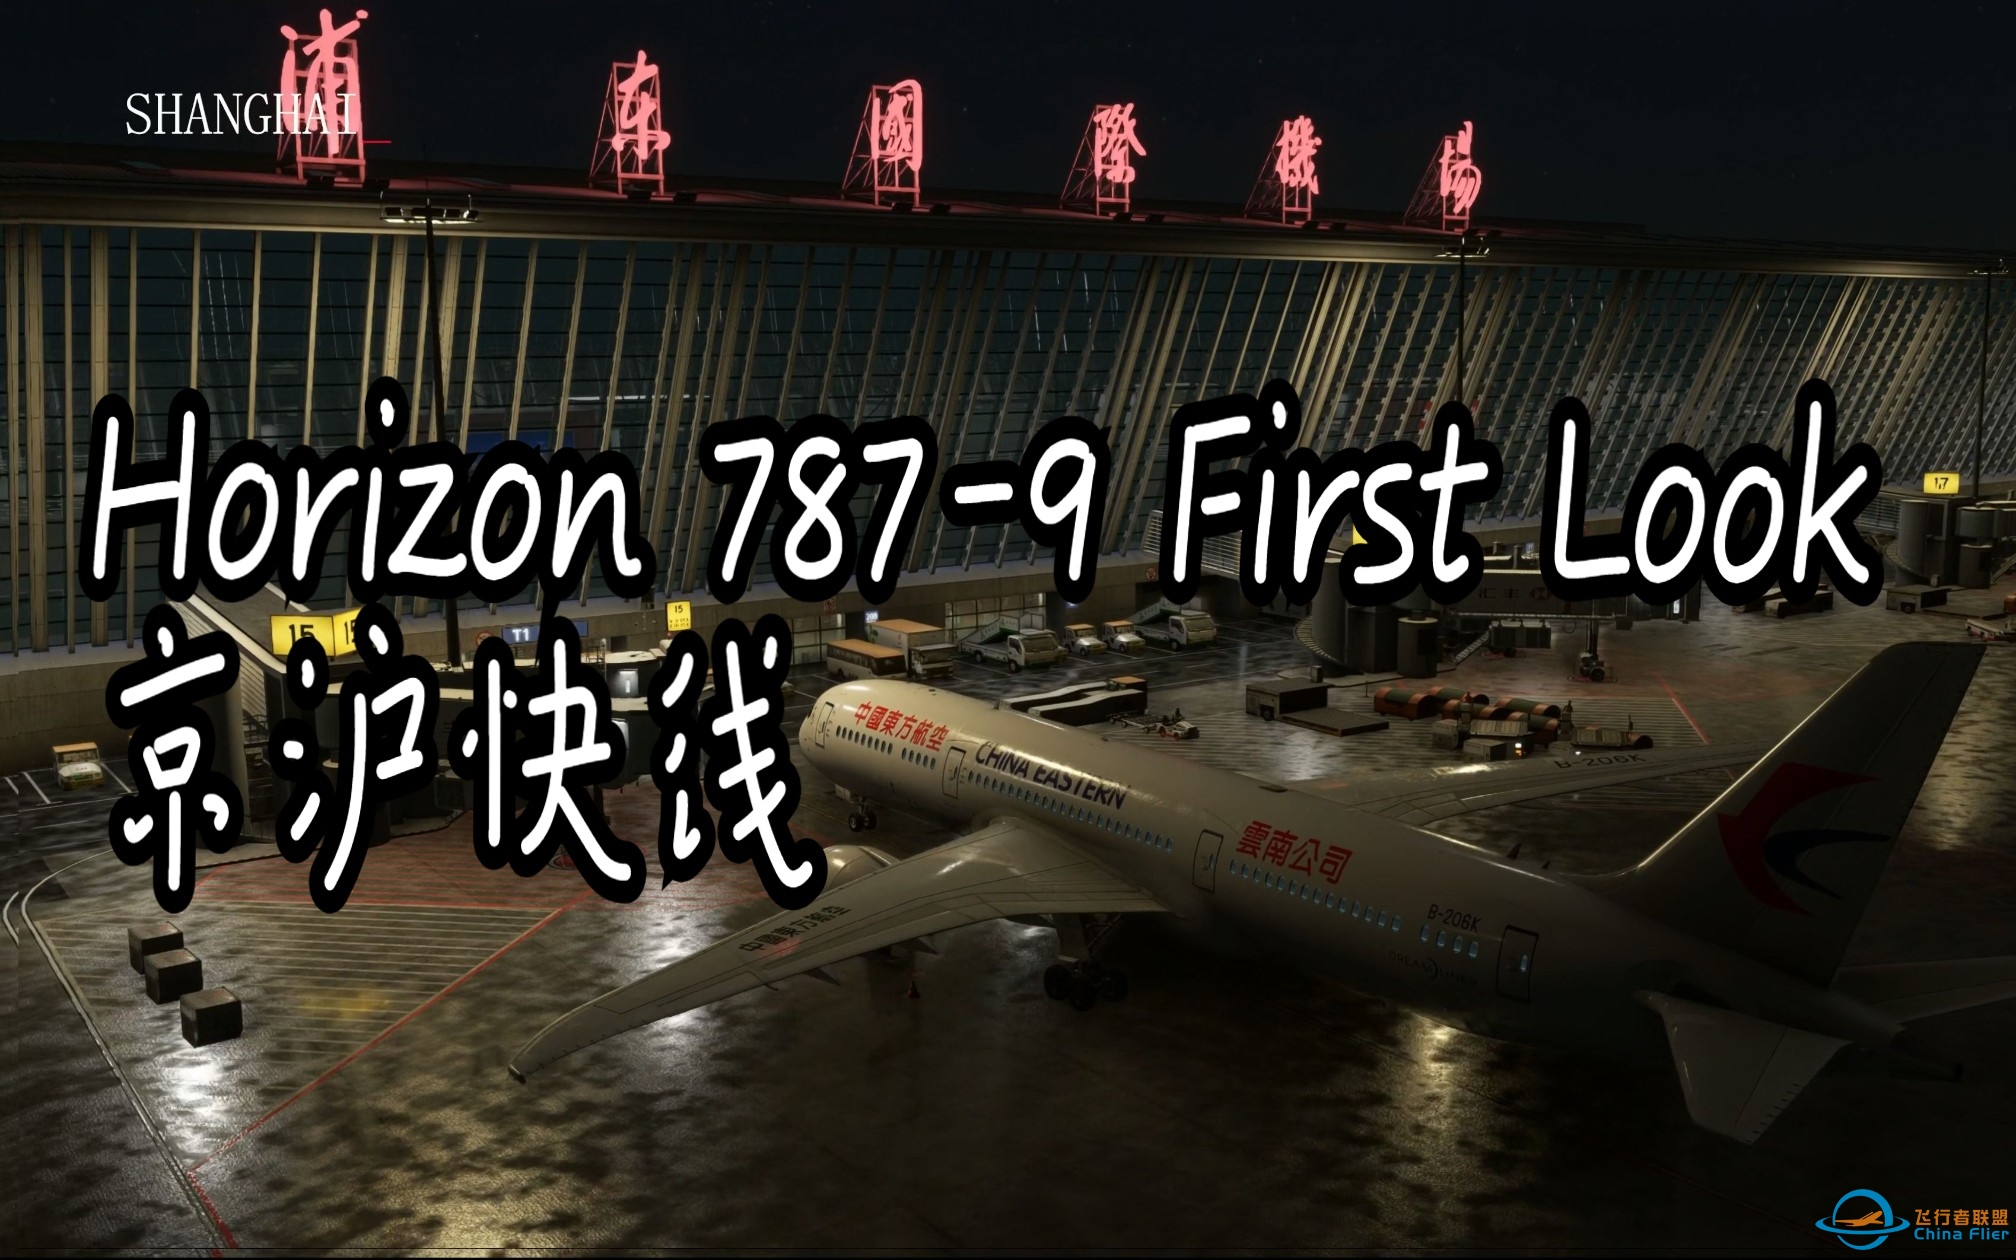 [模拟飞行2020]Horizon 787-9 初体验 |京沪快线 航线飞行|4k 60fps 最高画质-2652 